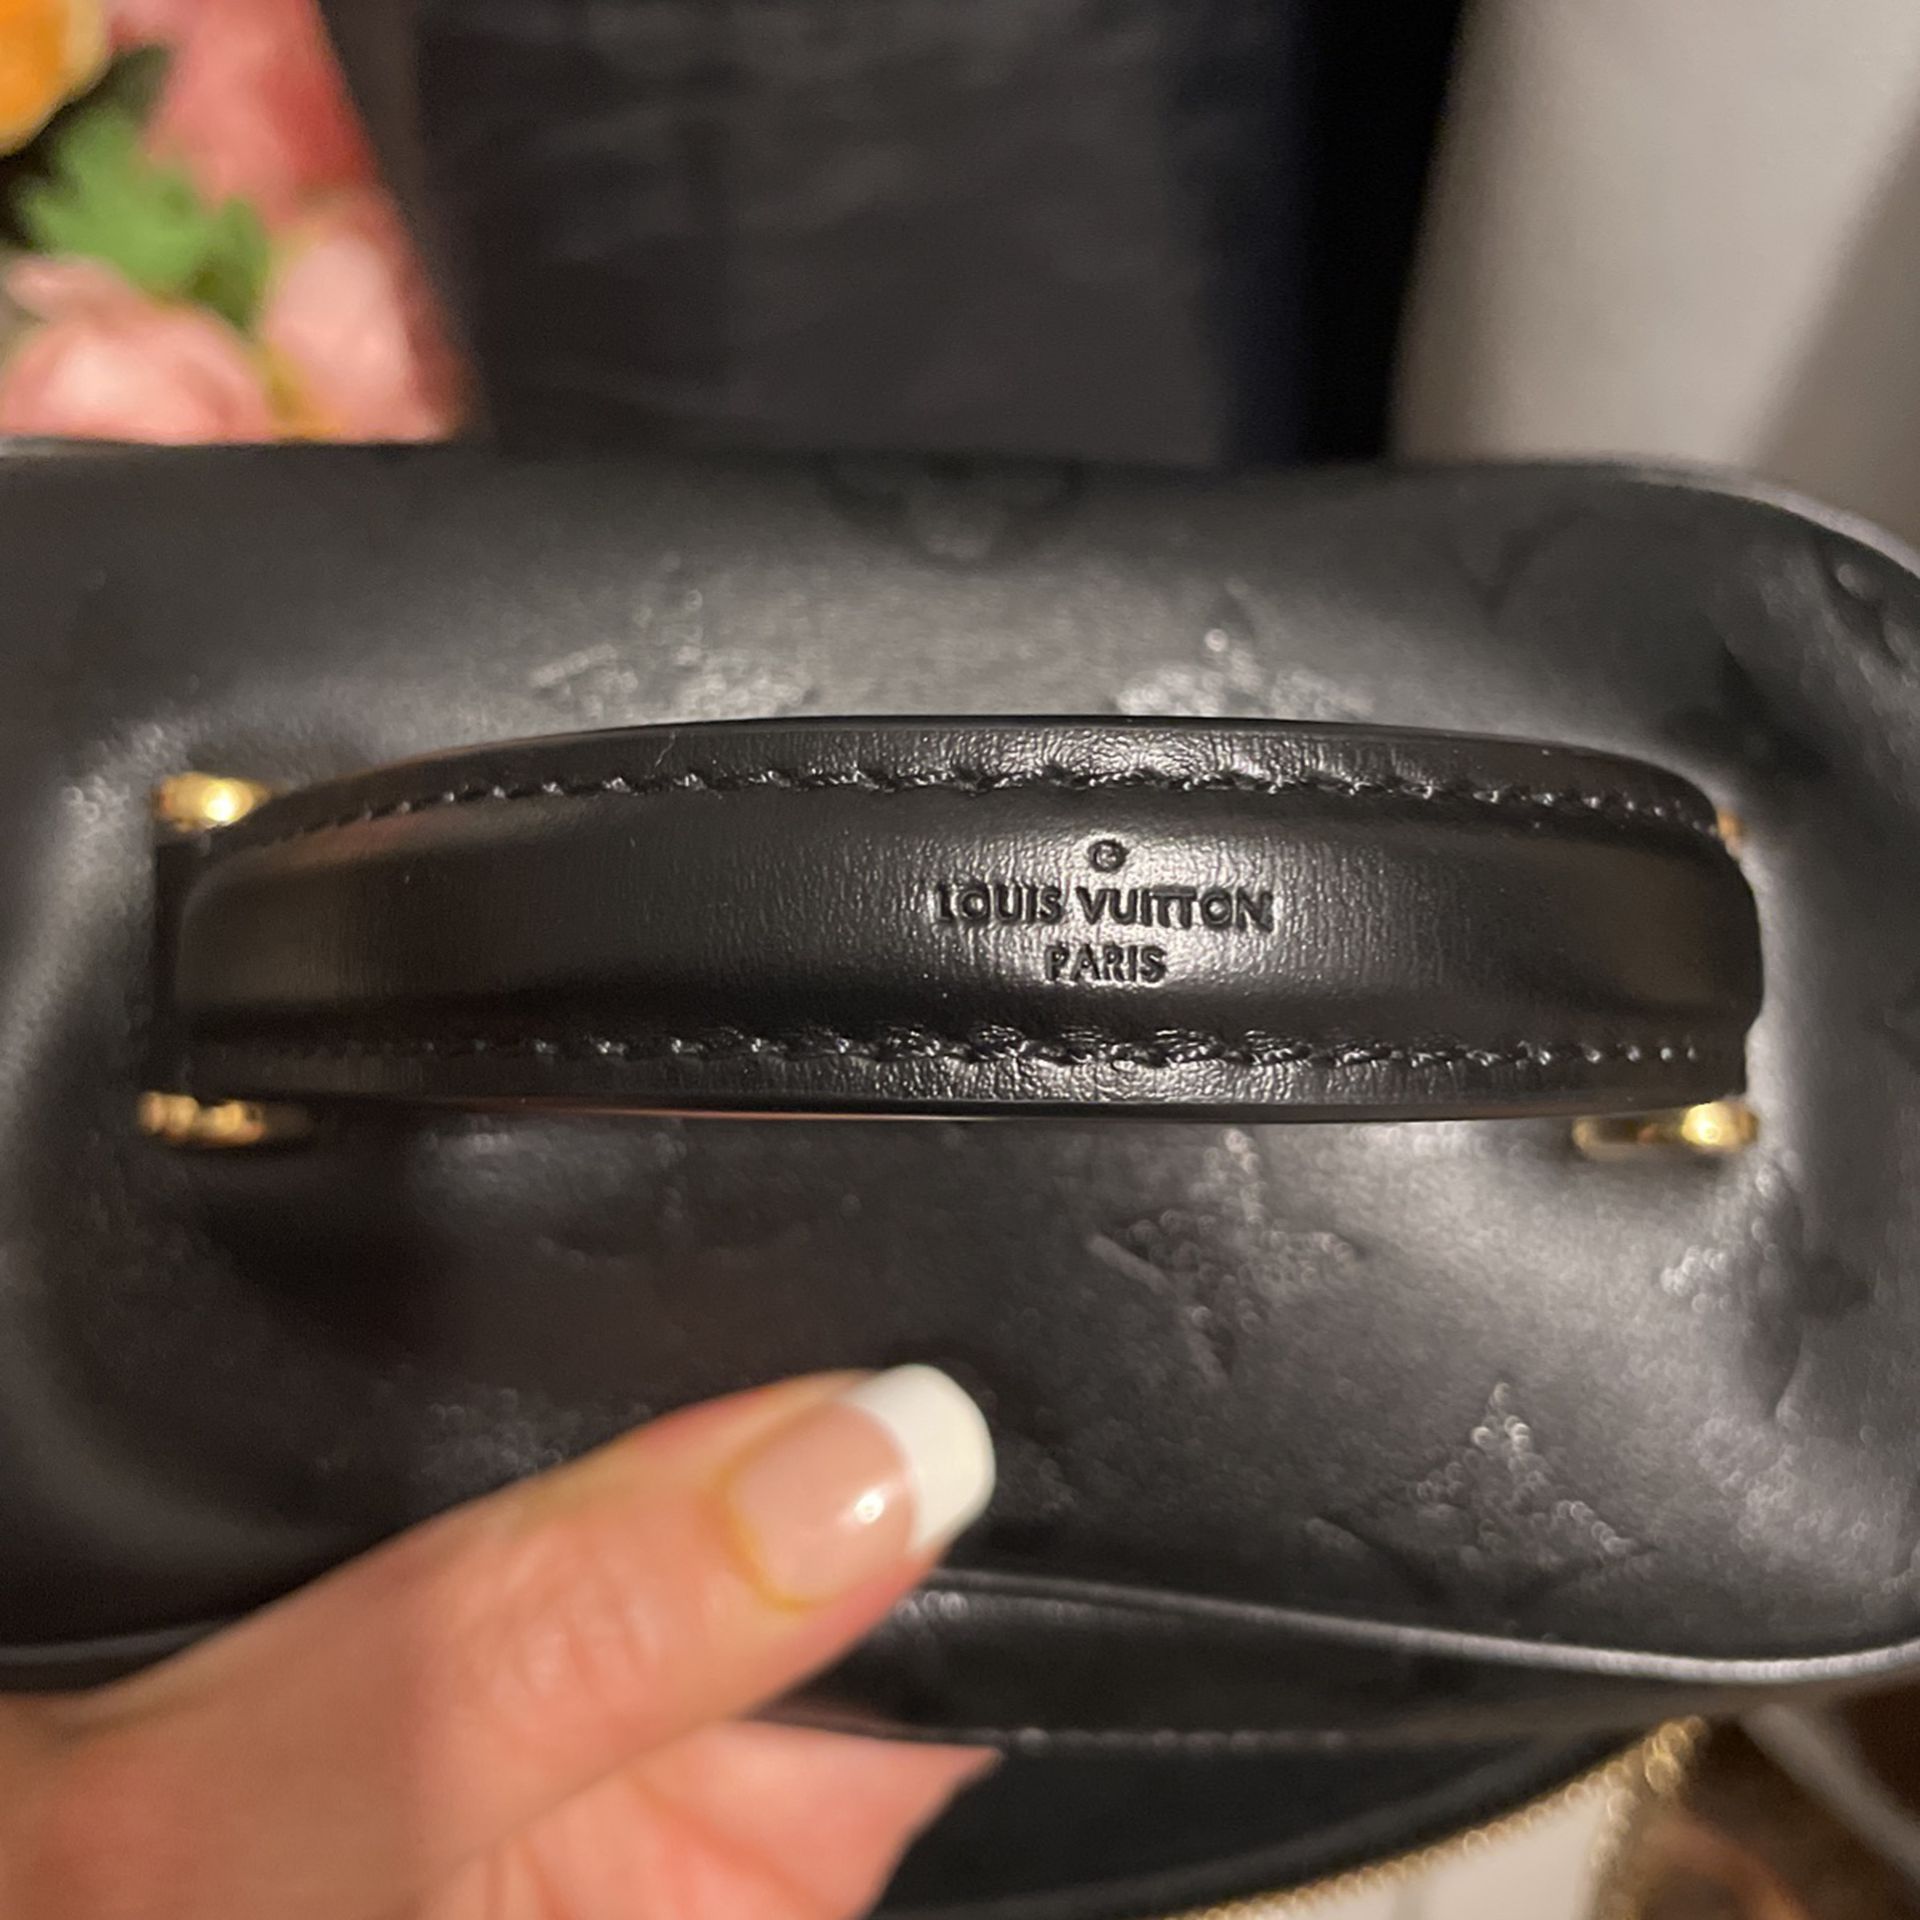 Louis Vuitton - Vanity PM - Brown – Shop It